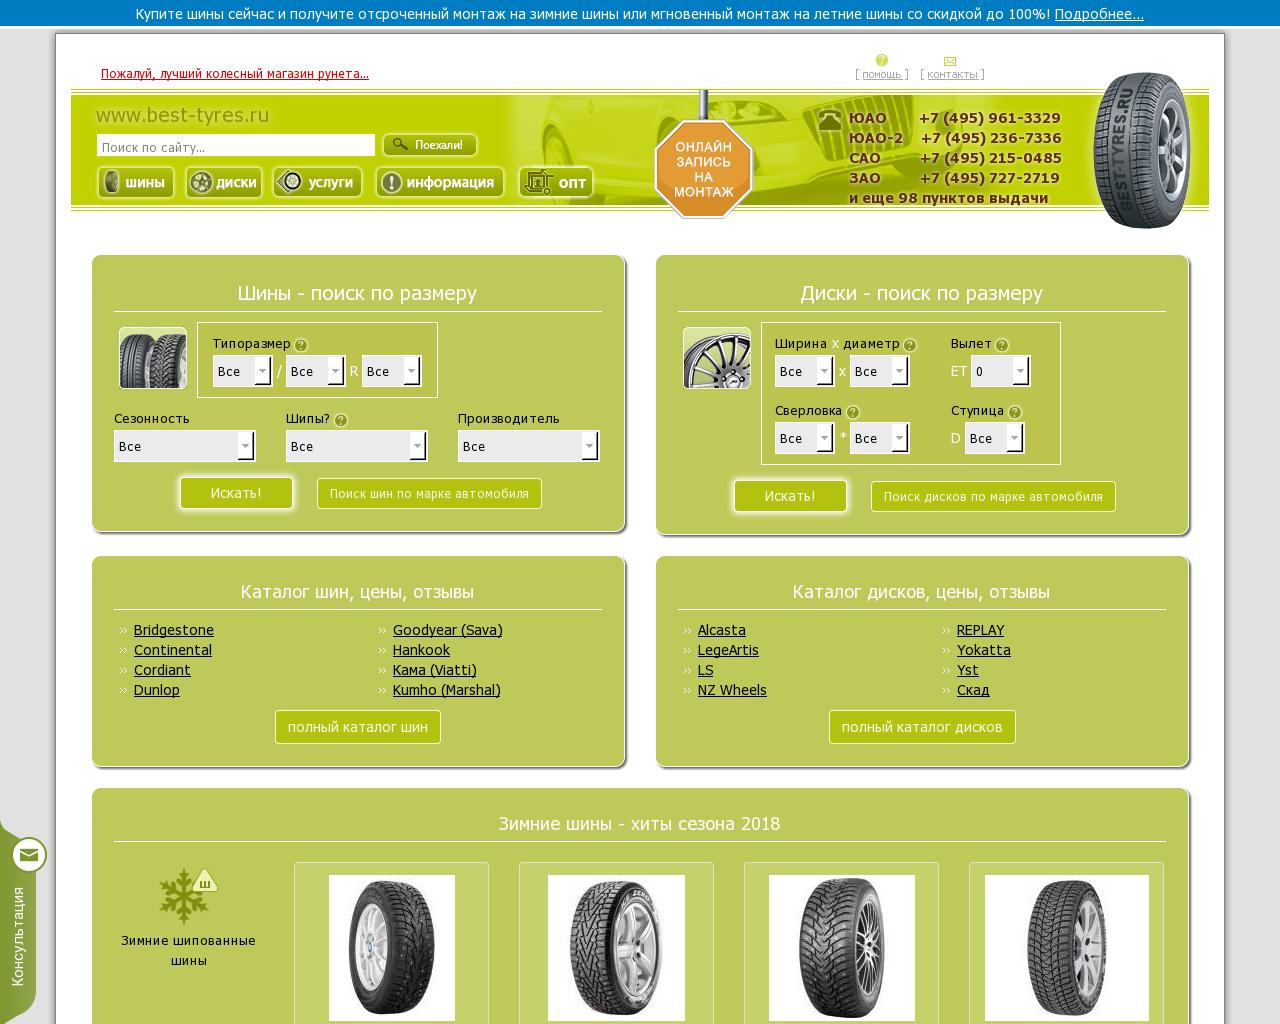 Изображение сайта best-tyre.ru в разрешении 1280x1024